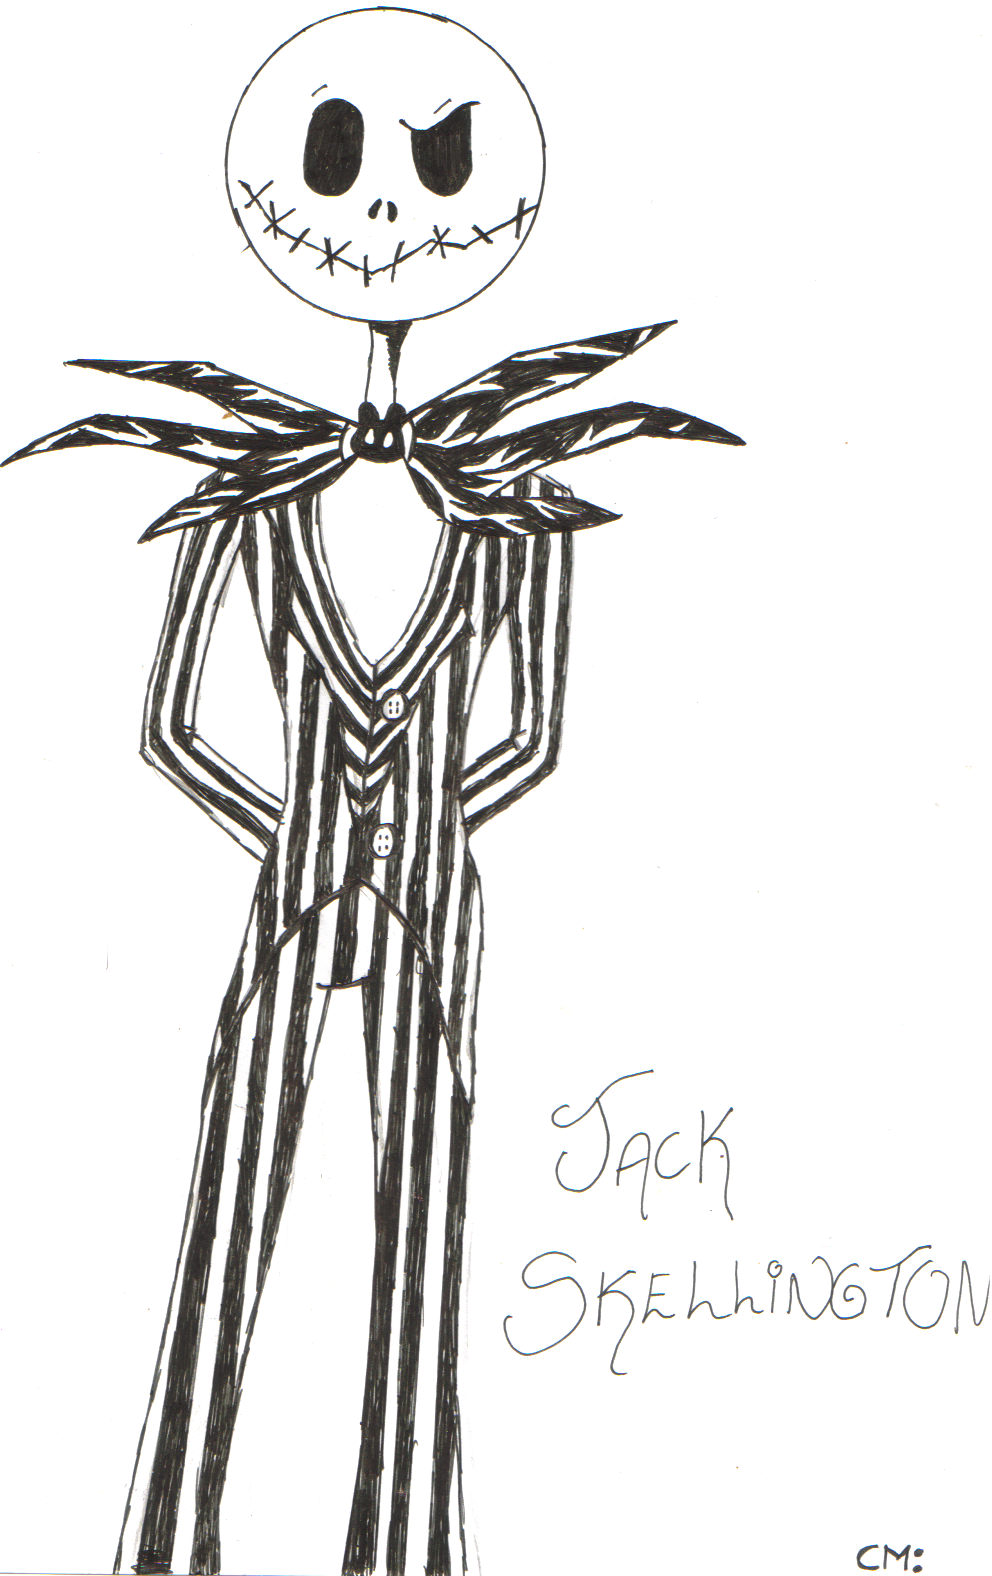 Jack skellington number twoooo by CharlSkellington00